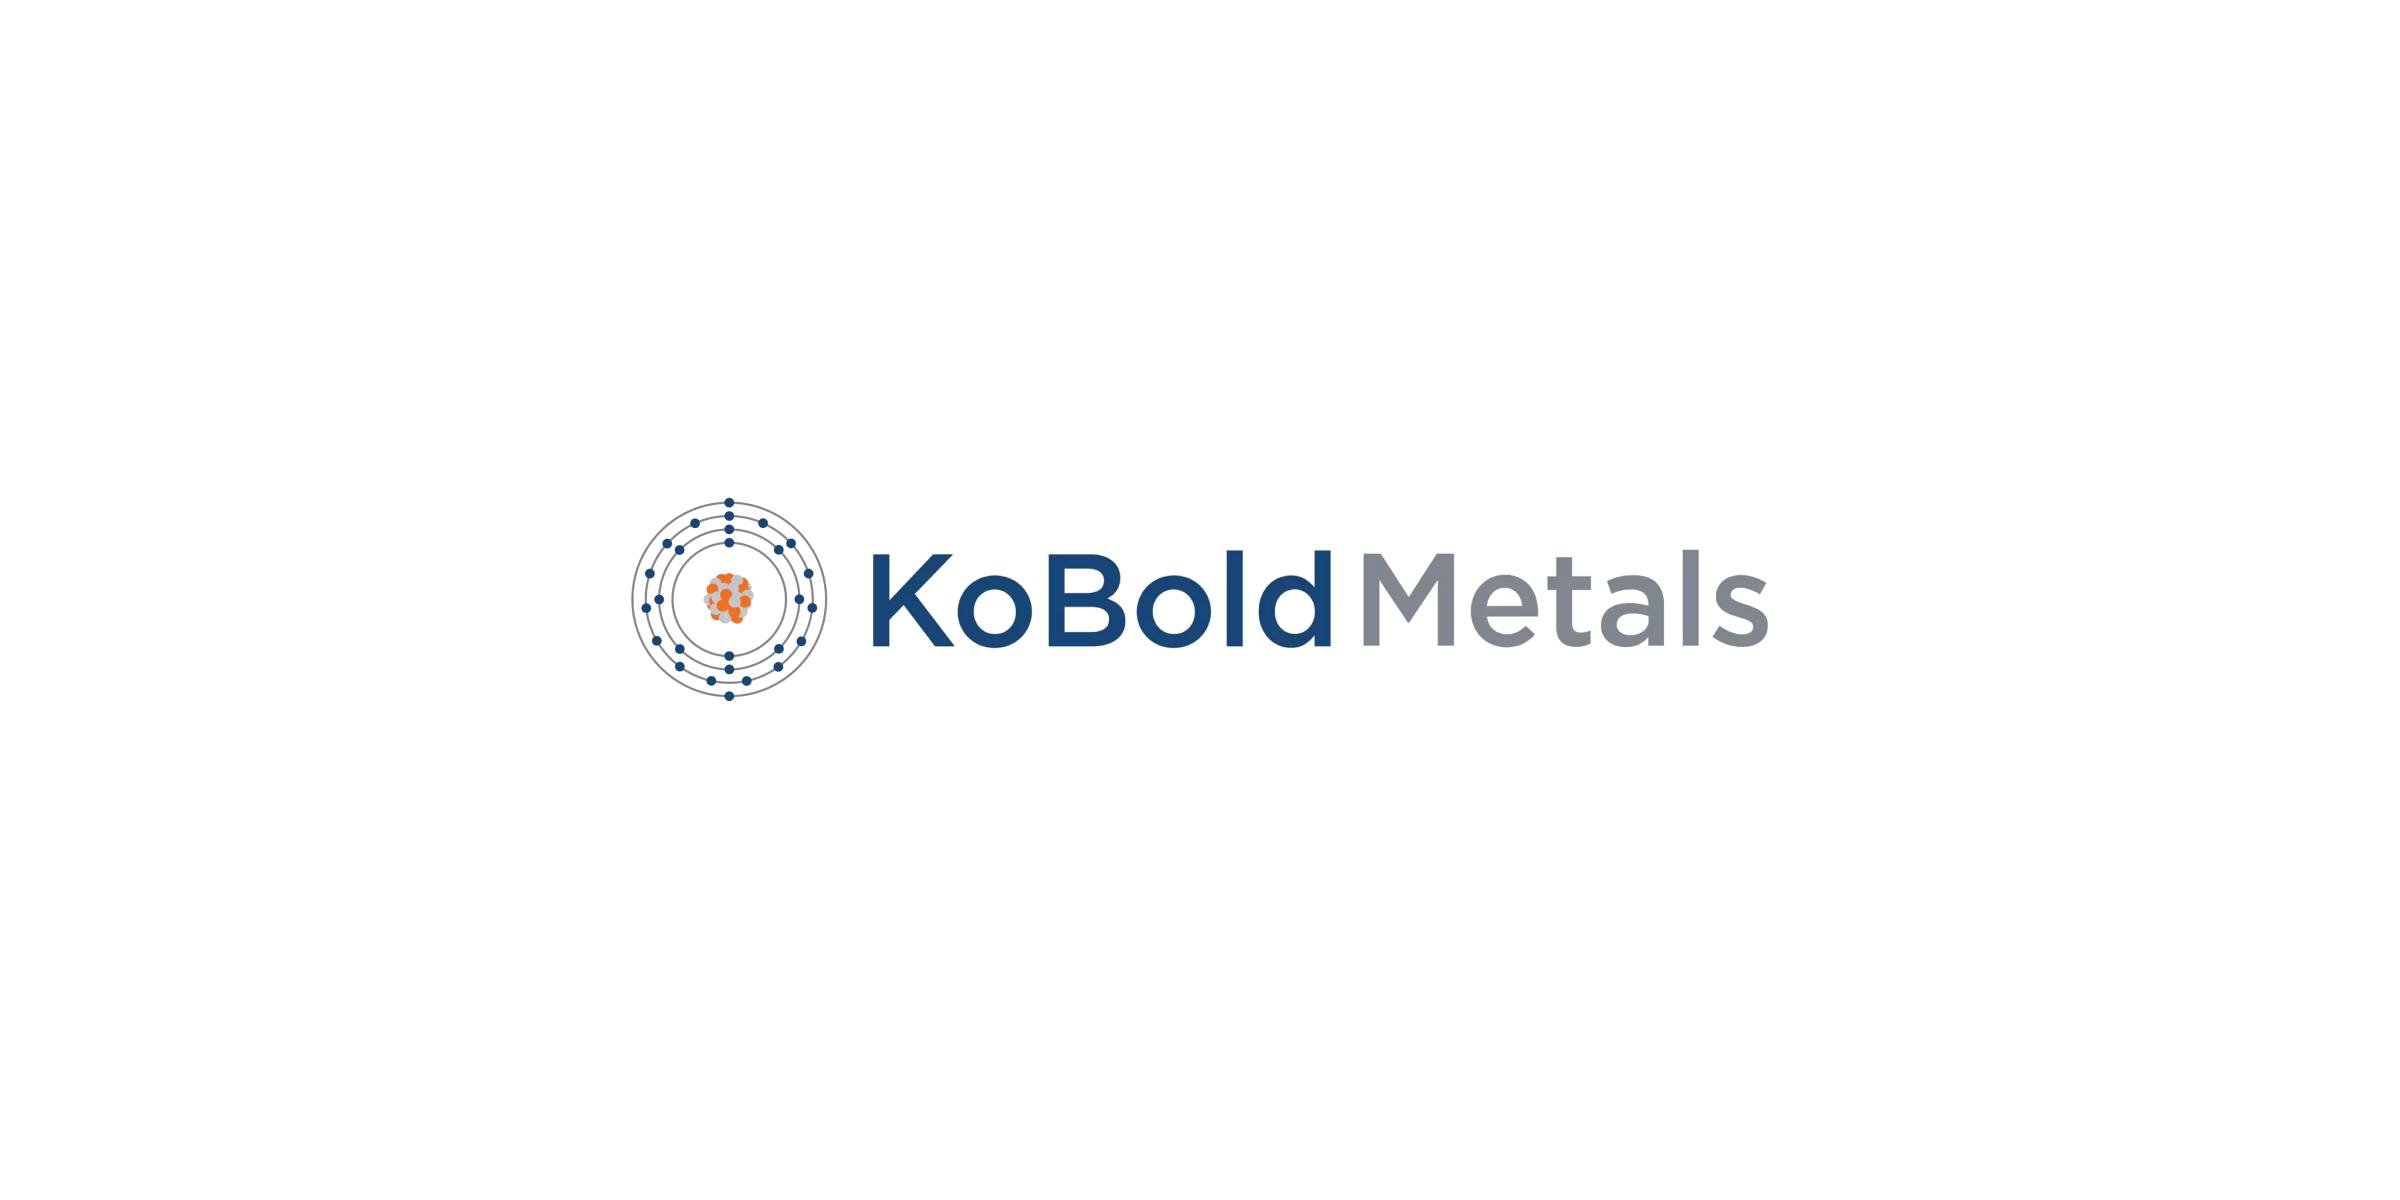 Report: KoBold Metals Business Breakdown & Founding Story